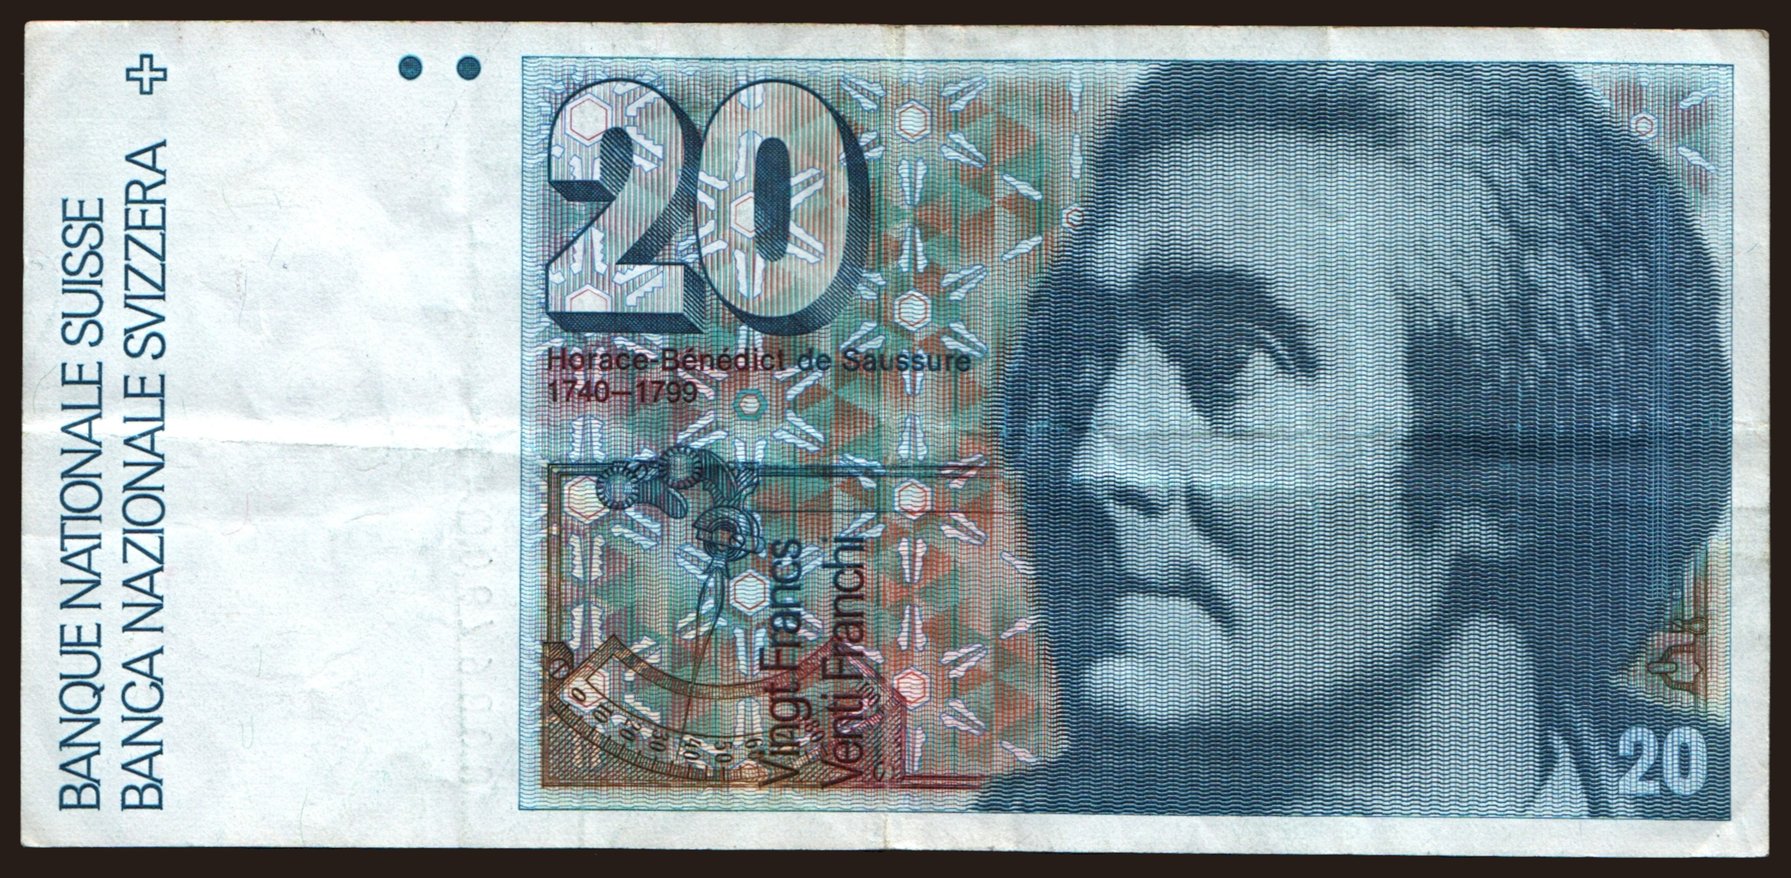 20 francs, 1986